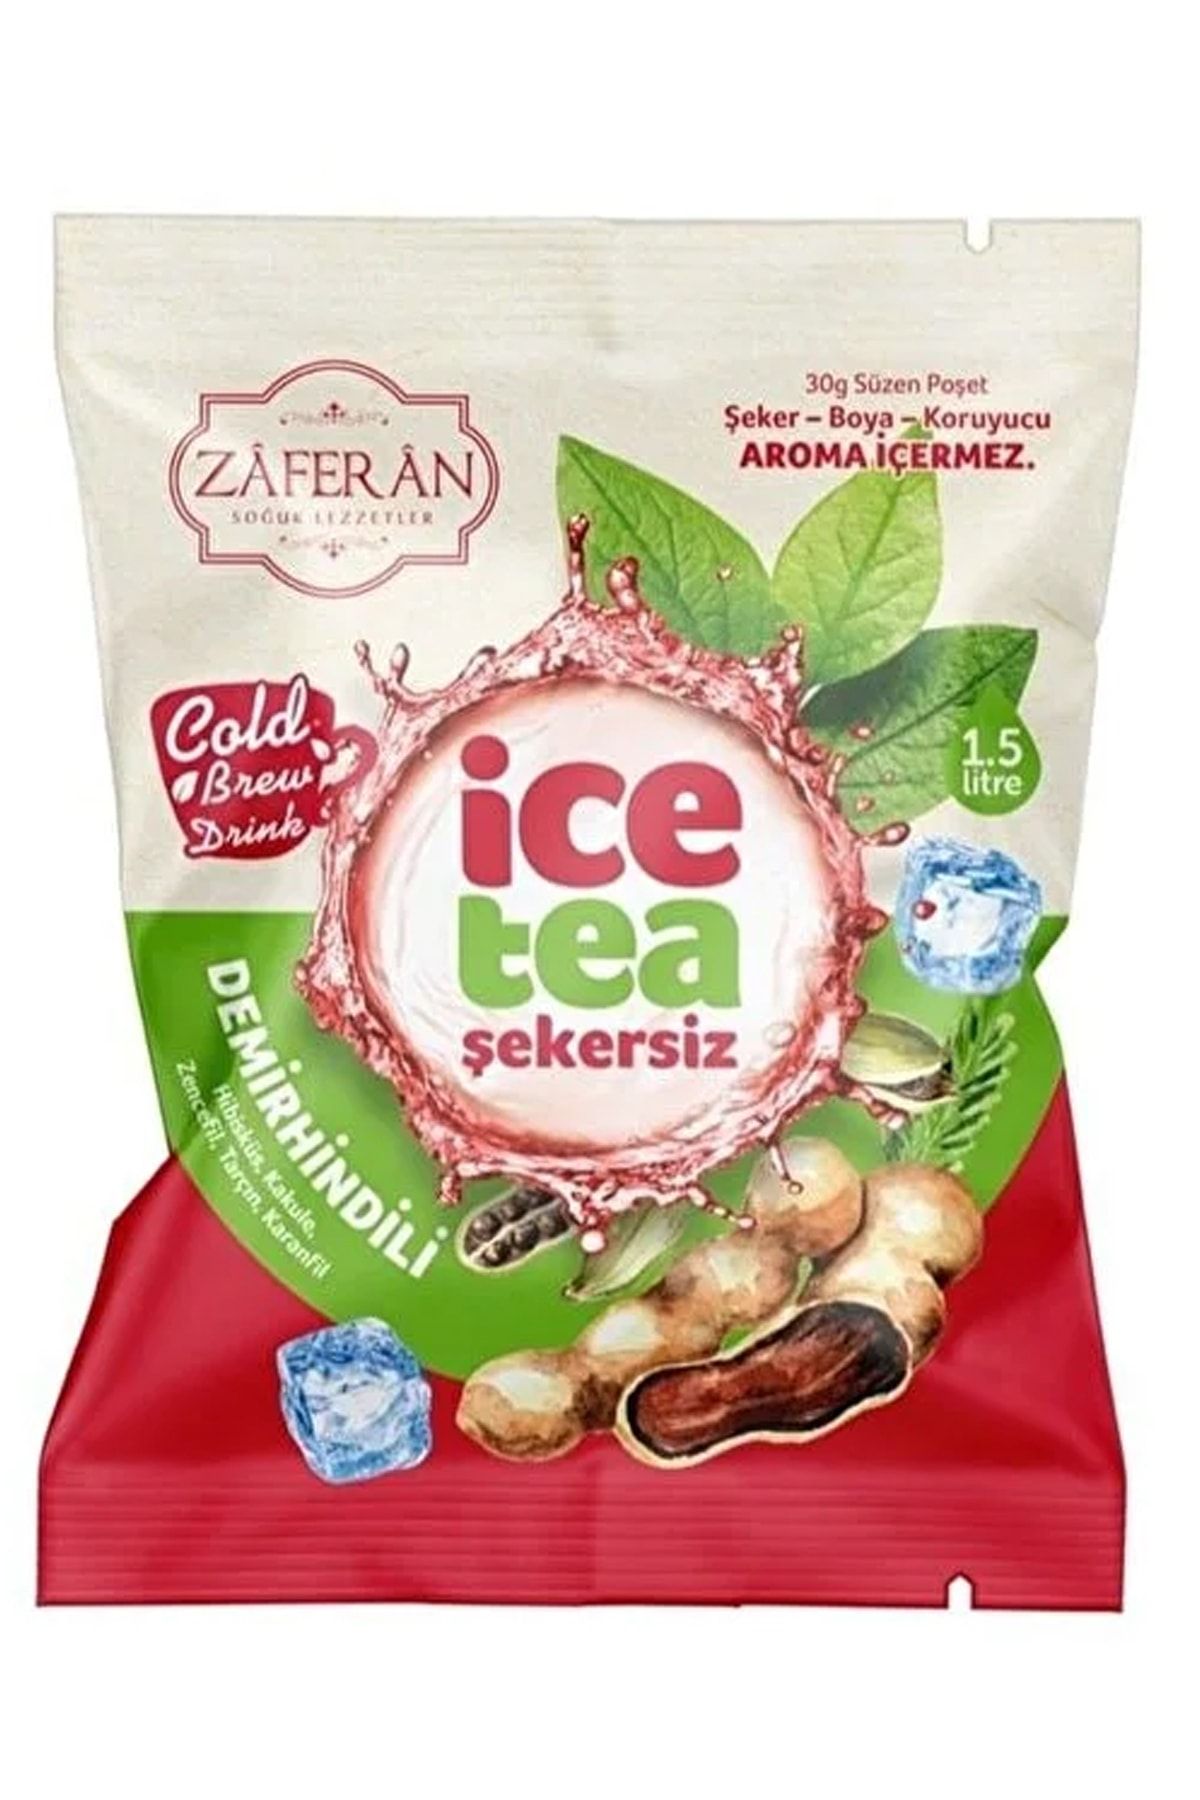 Zaferan Türk Şerbetleri Ice Tea Demirhindili 1.5 Lt. Soğuk Çay